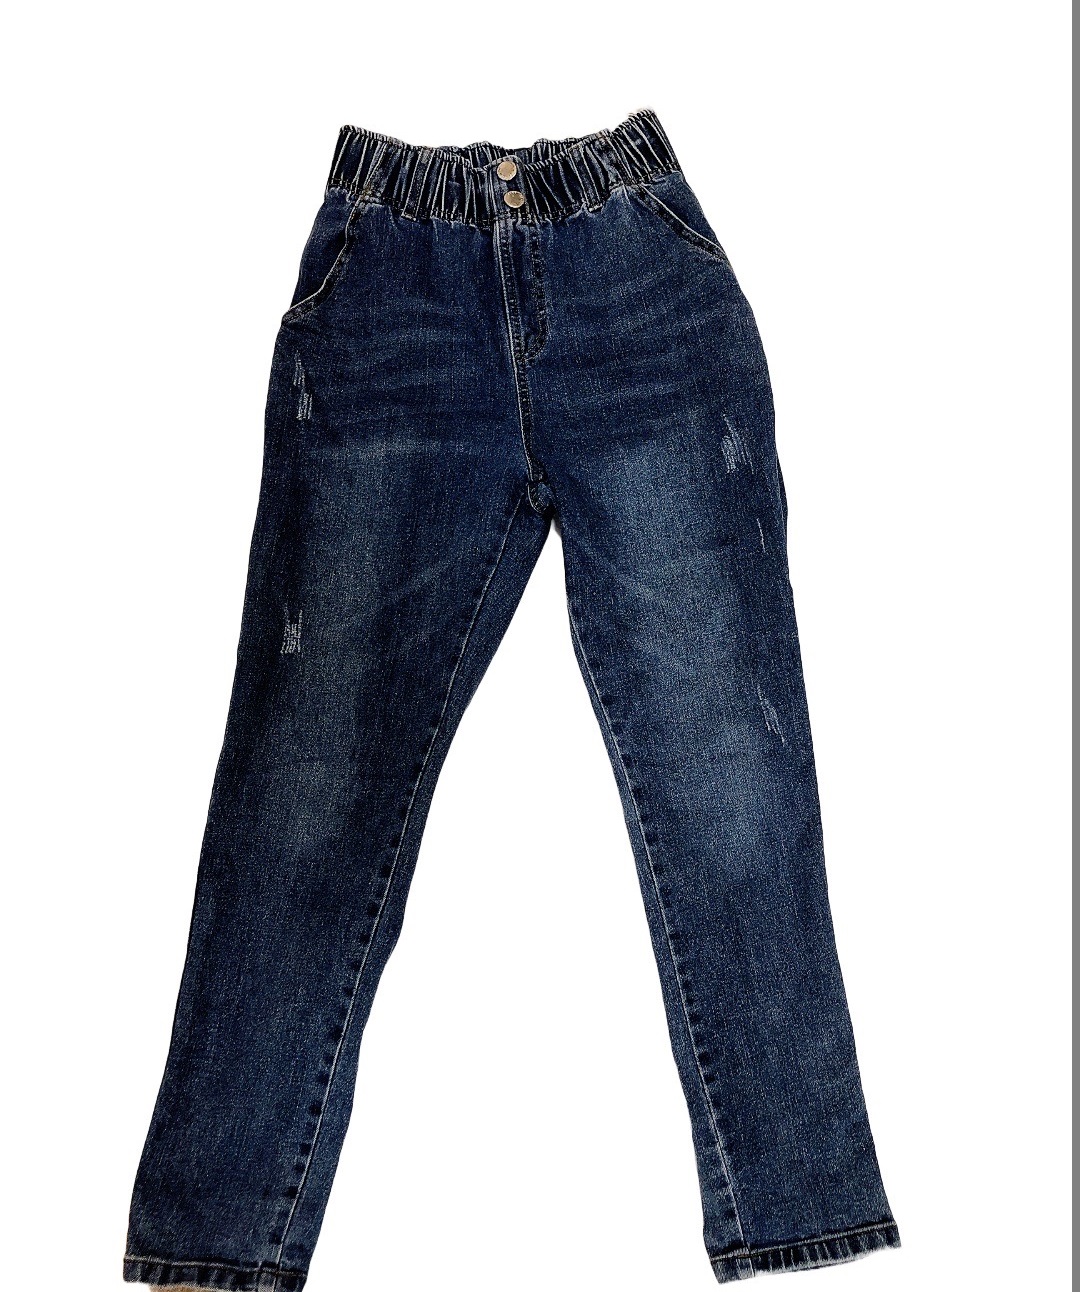 青少女兒童牛仔褲(155)
NT$99